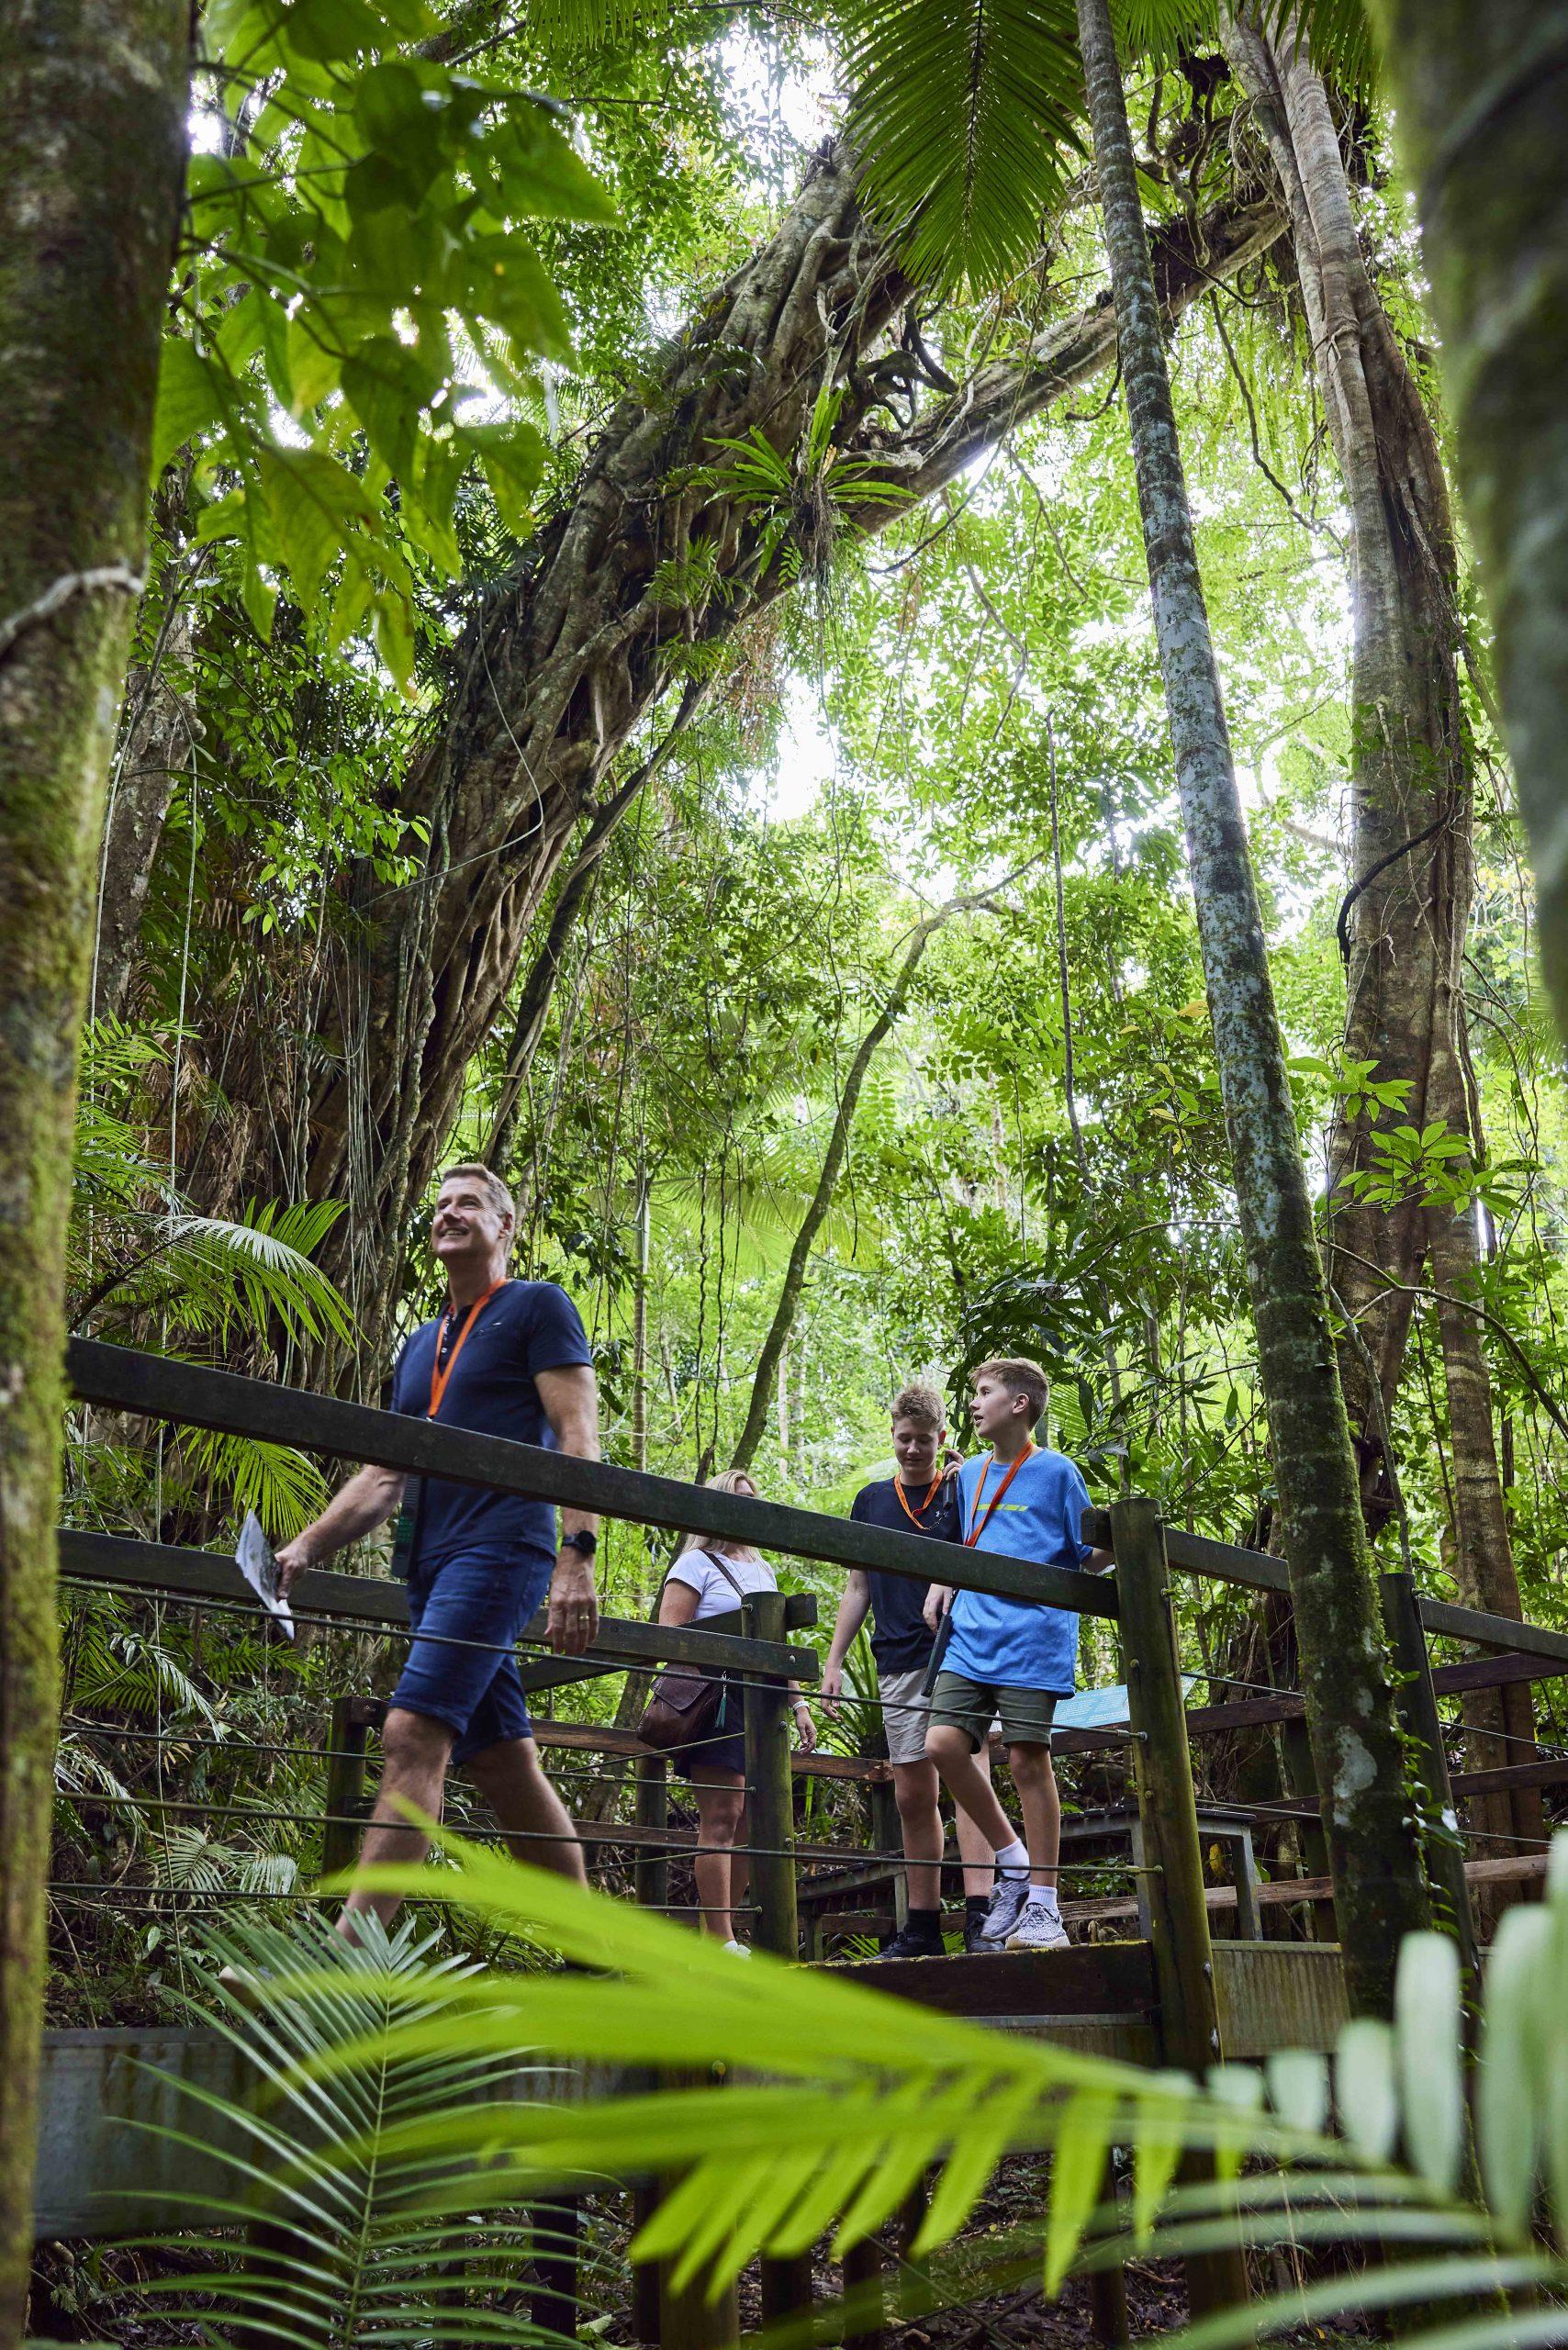 daintree rainforest trip from cairns